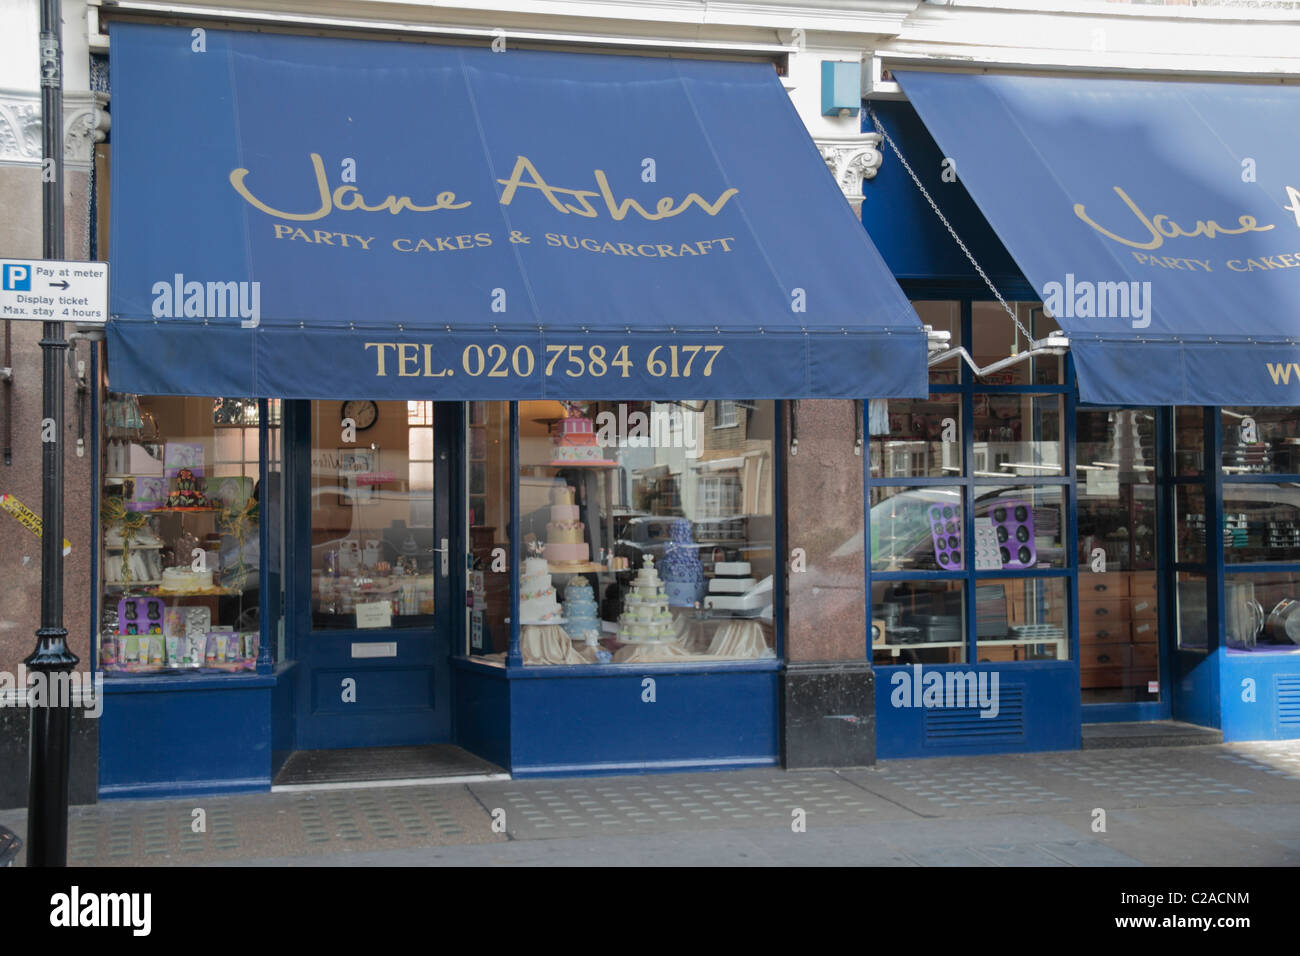 Le parti Jane Asher et gâteaux sugarcraft shop sur Chelsea Green, Cale Street, Chelsea, London, UK. Banque D'Images